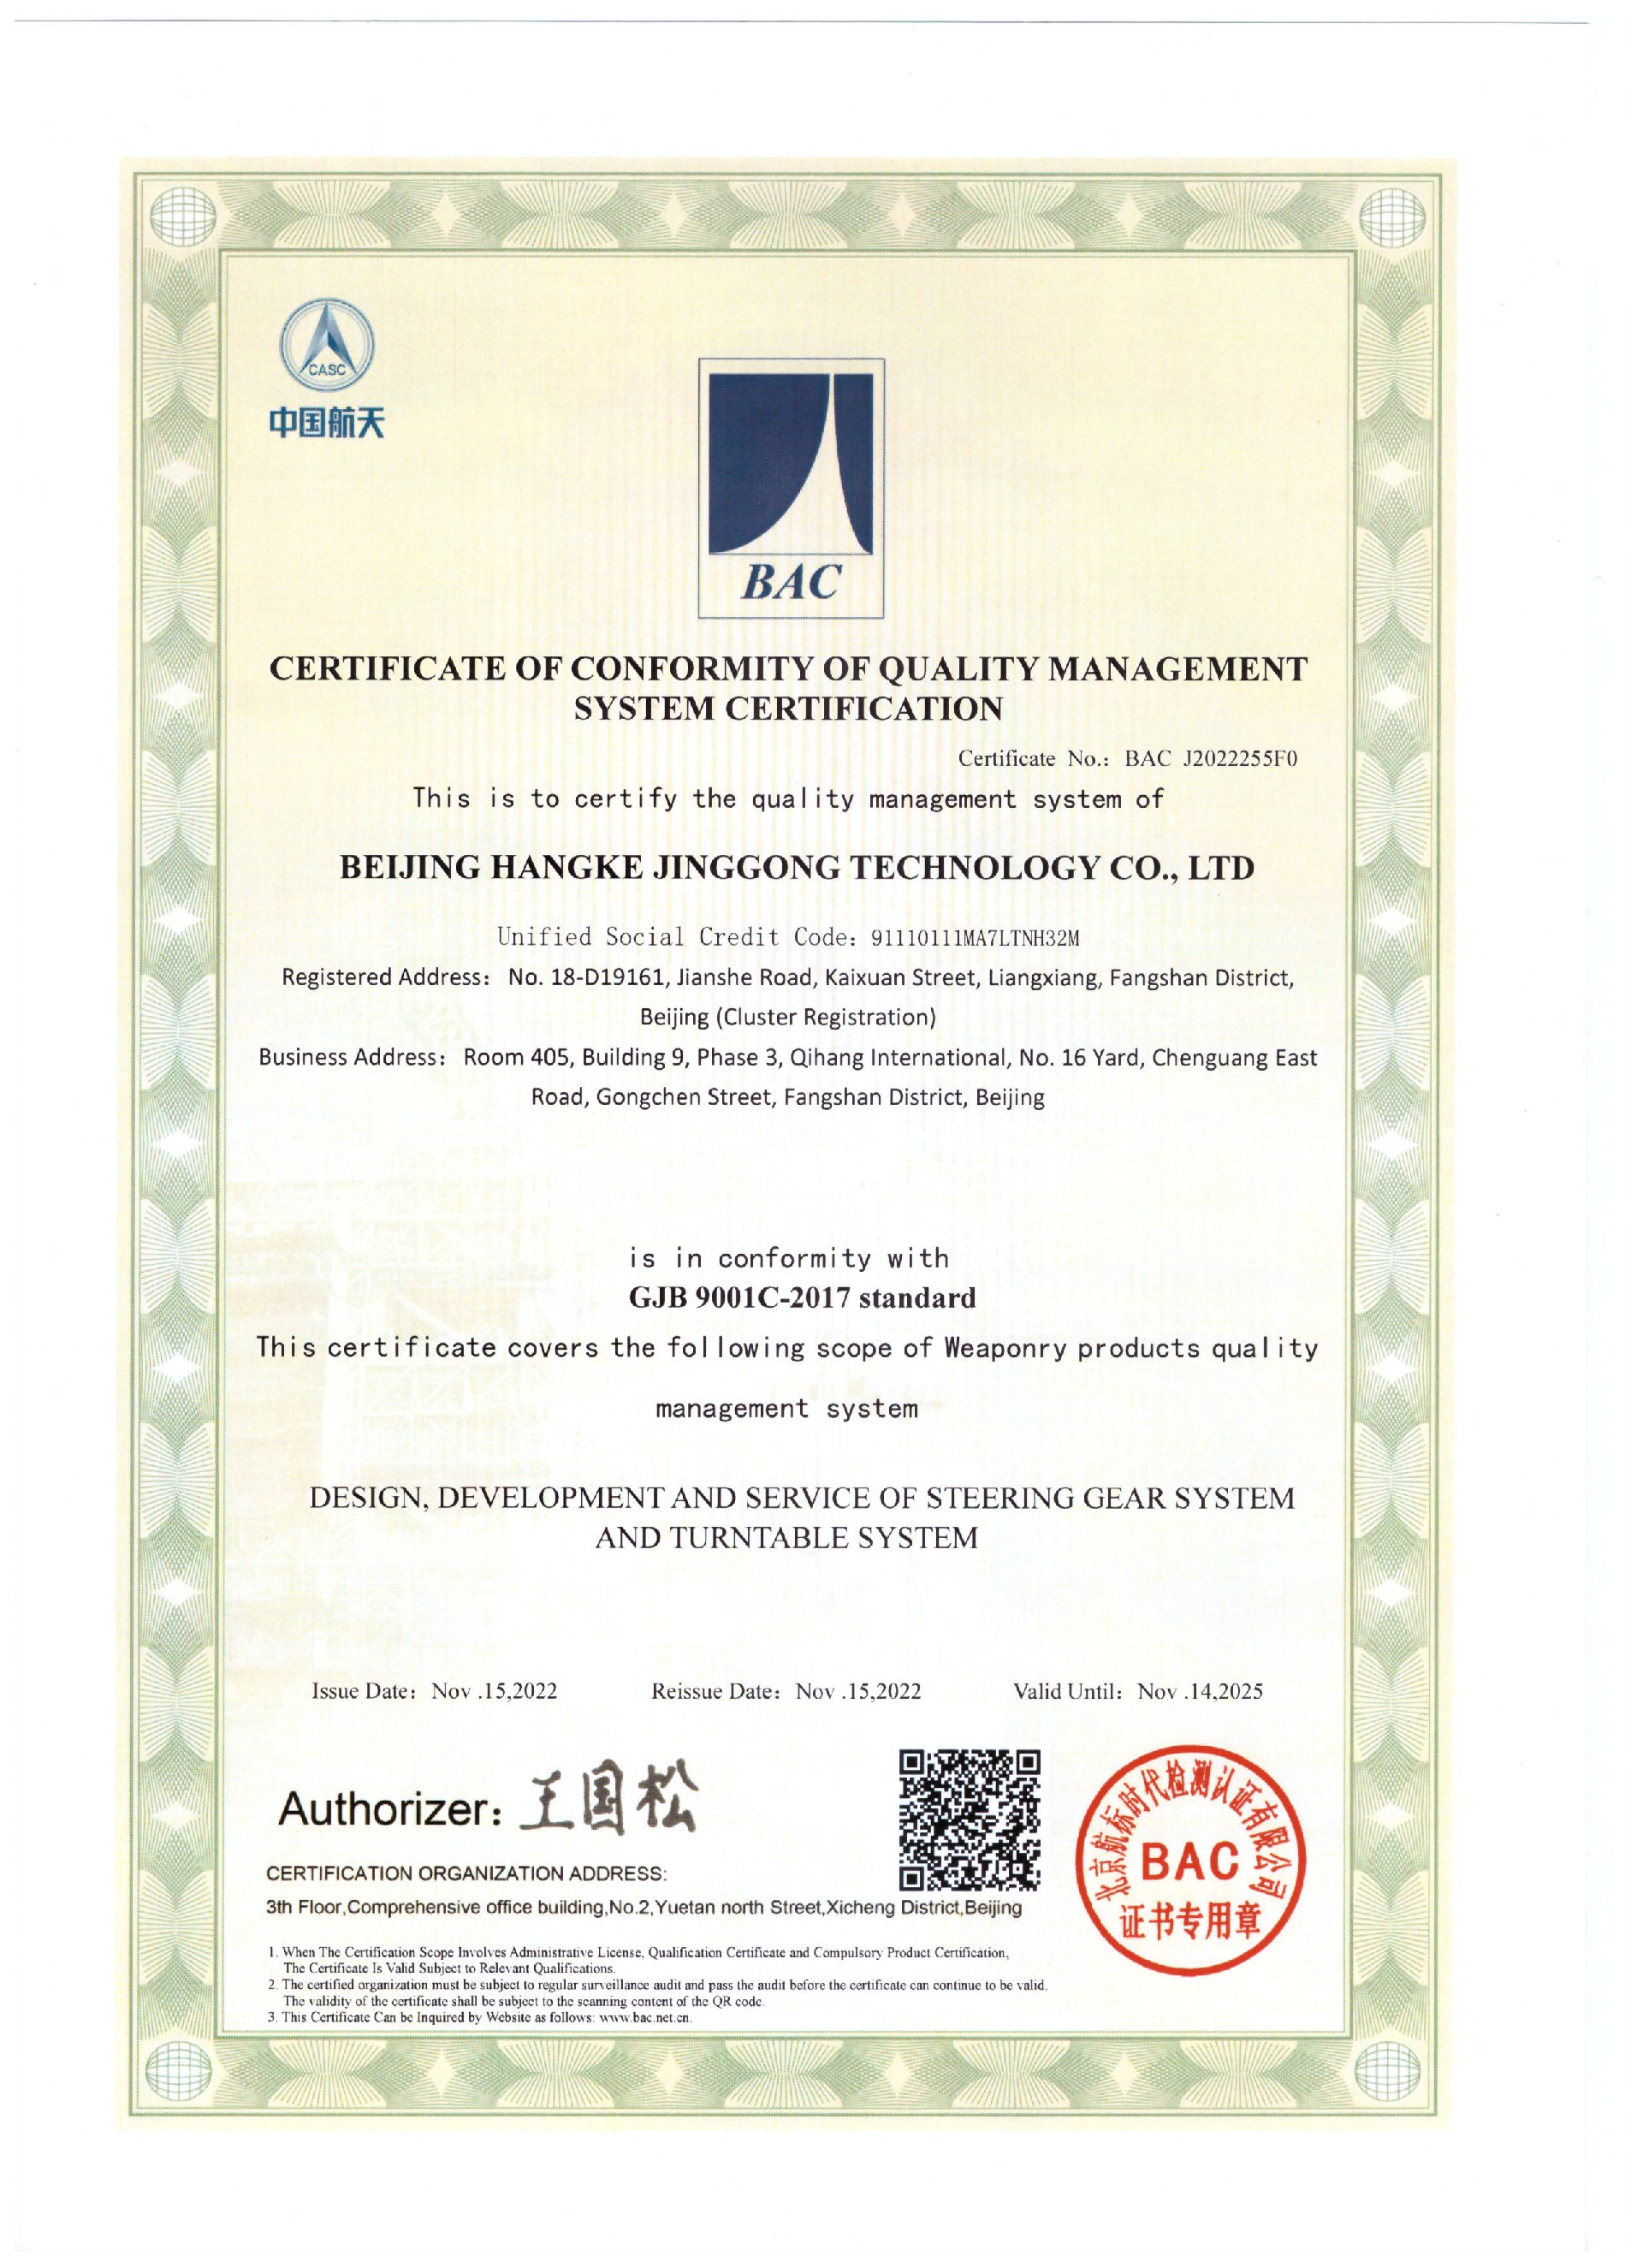 北京航科京工科技有限责任公司-G证书（武器装备质量管理体系认证证书）-英文.jpg